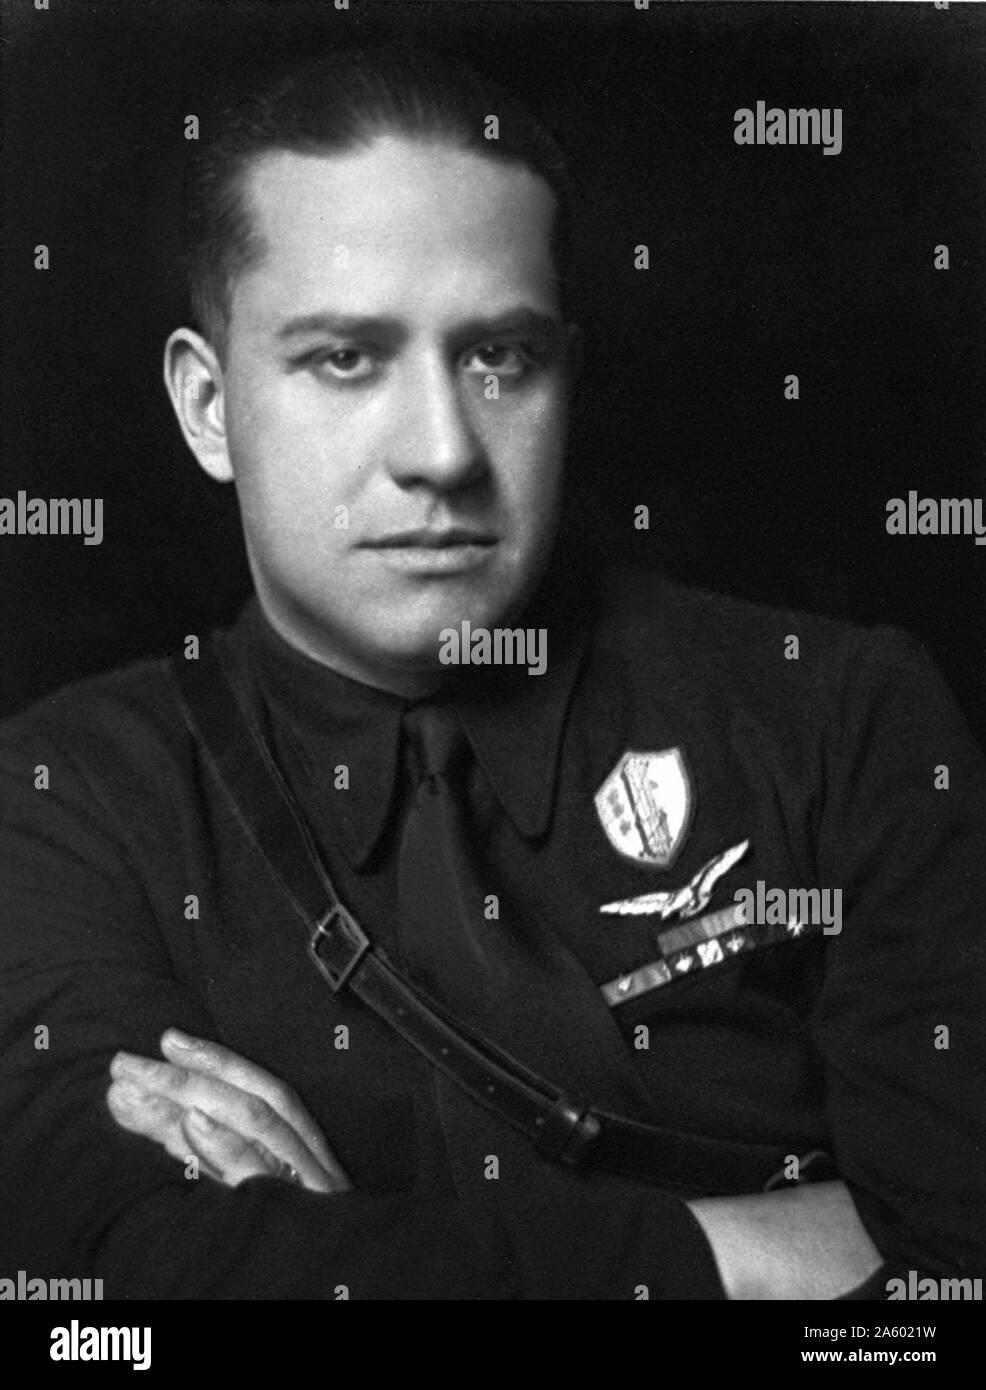 Count Gian Galeazzo Ciano, (1903 - 11 janvier 1944), le Ministre des affaires étrangères de l'Italie fasciste de 1936 à 1943 et Benito Mussolini a beau-fils. Le 11 janvier 1944, le comte Ciano a été abattu par un peloton d'exécution à la demande de son beau-père, Mussolini Banque D'Images